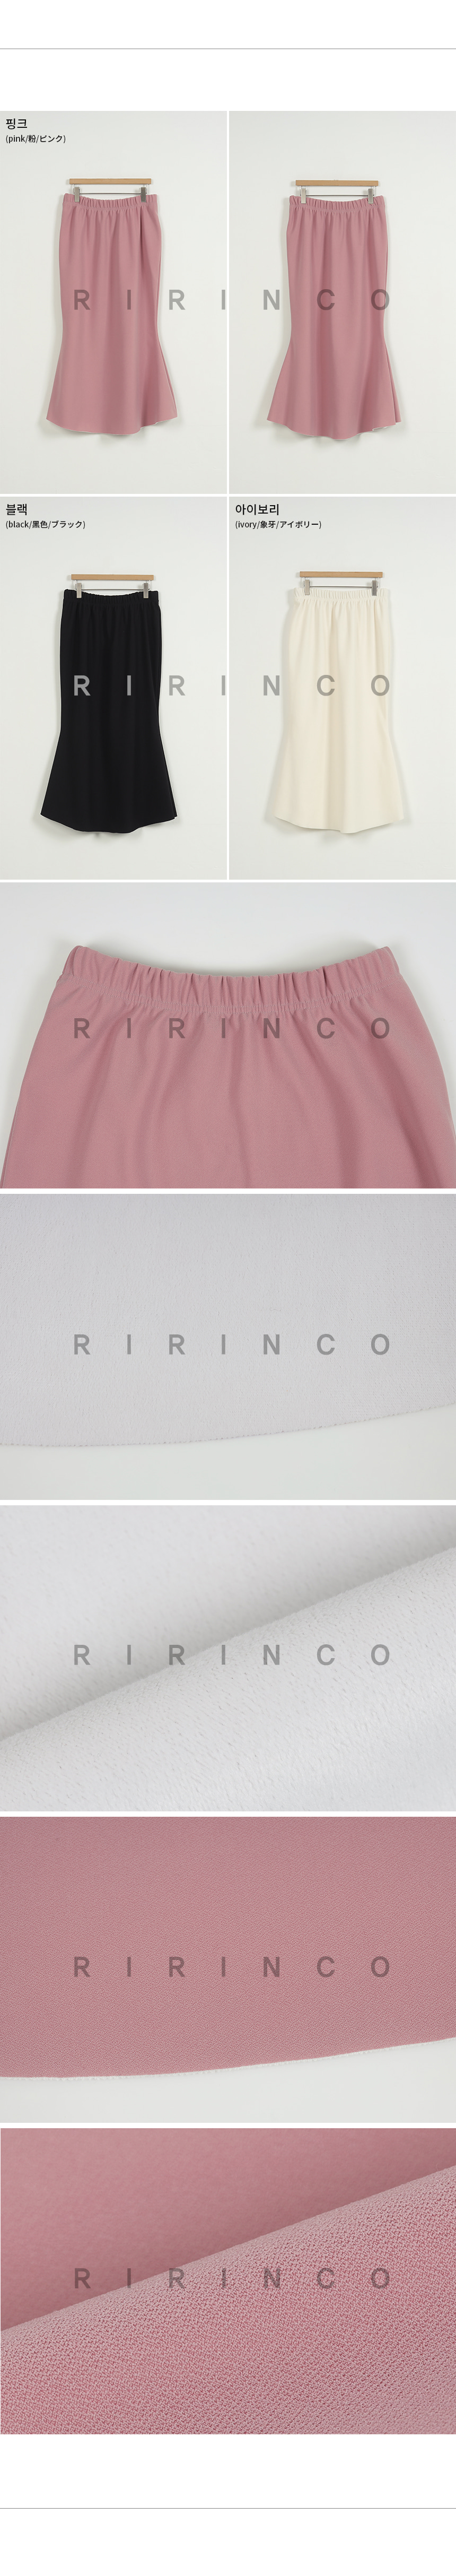 RIRINCO 起毛ウエストゴムマーメイドスカート